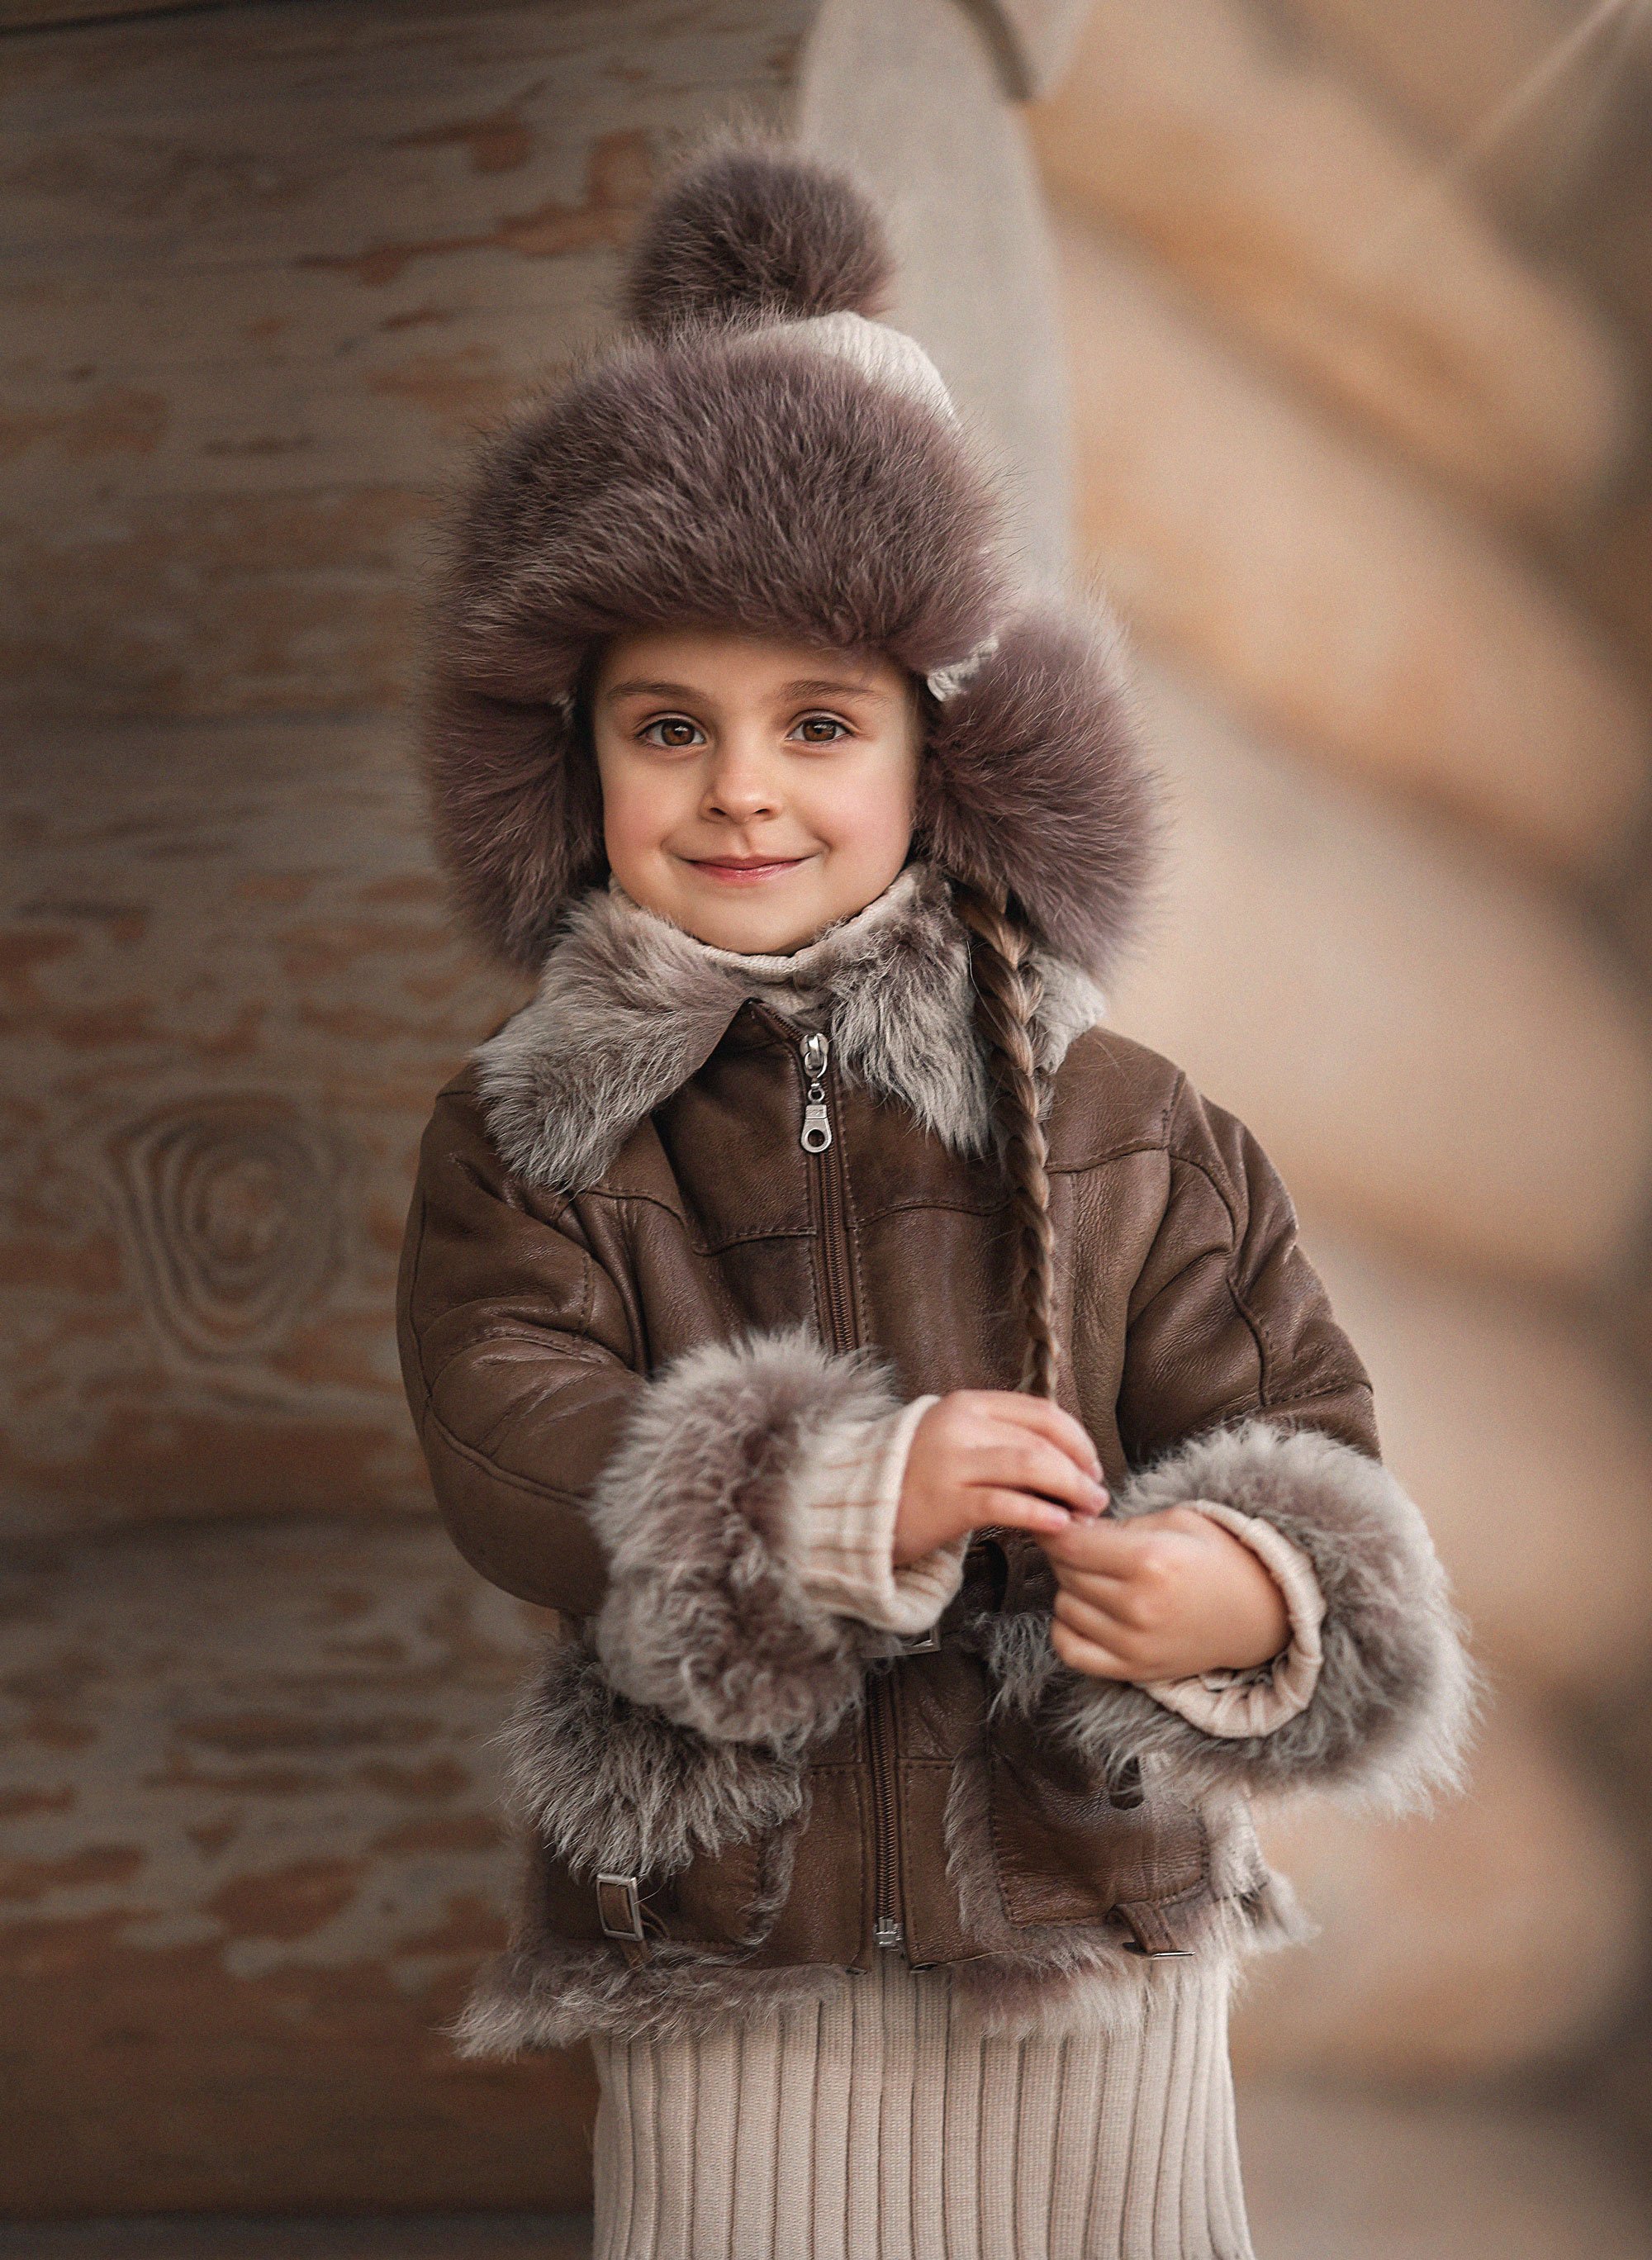 детский портрет, детская фотография, детская фотосессия, зима, сруб, Александра Пименова